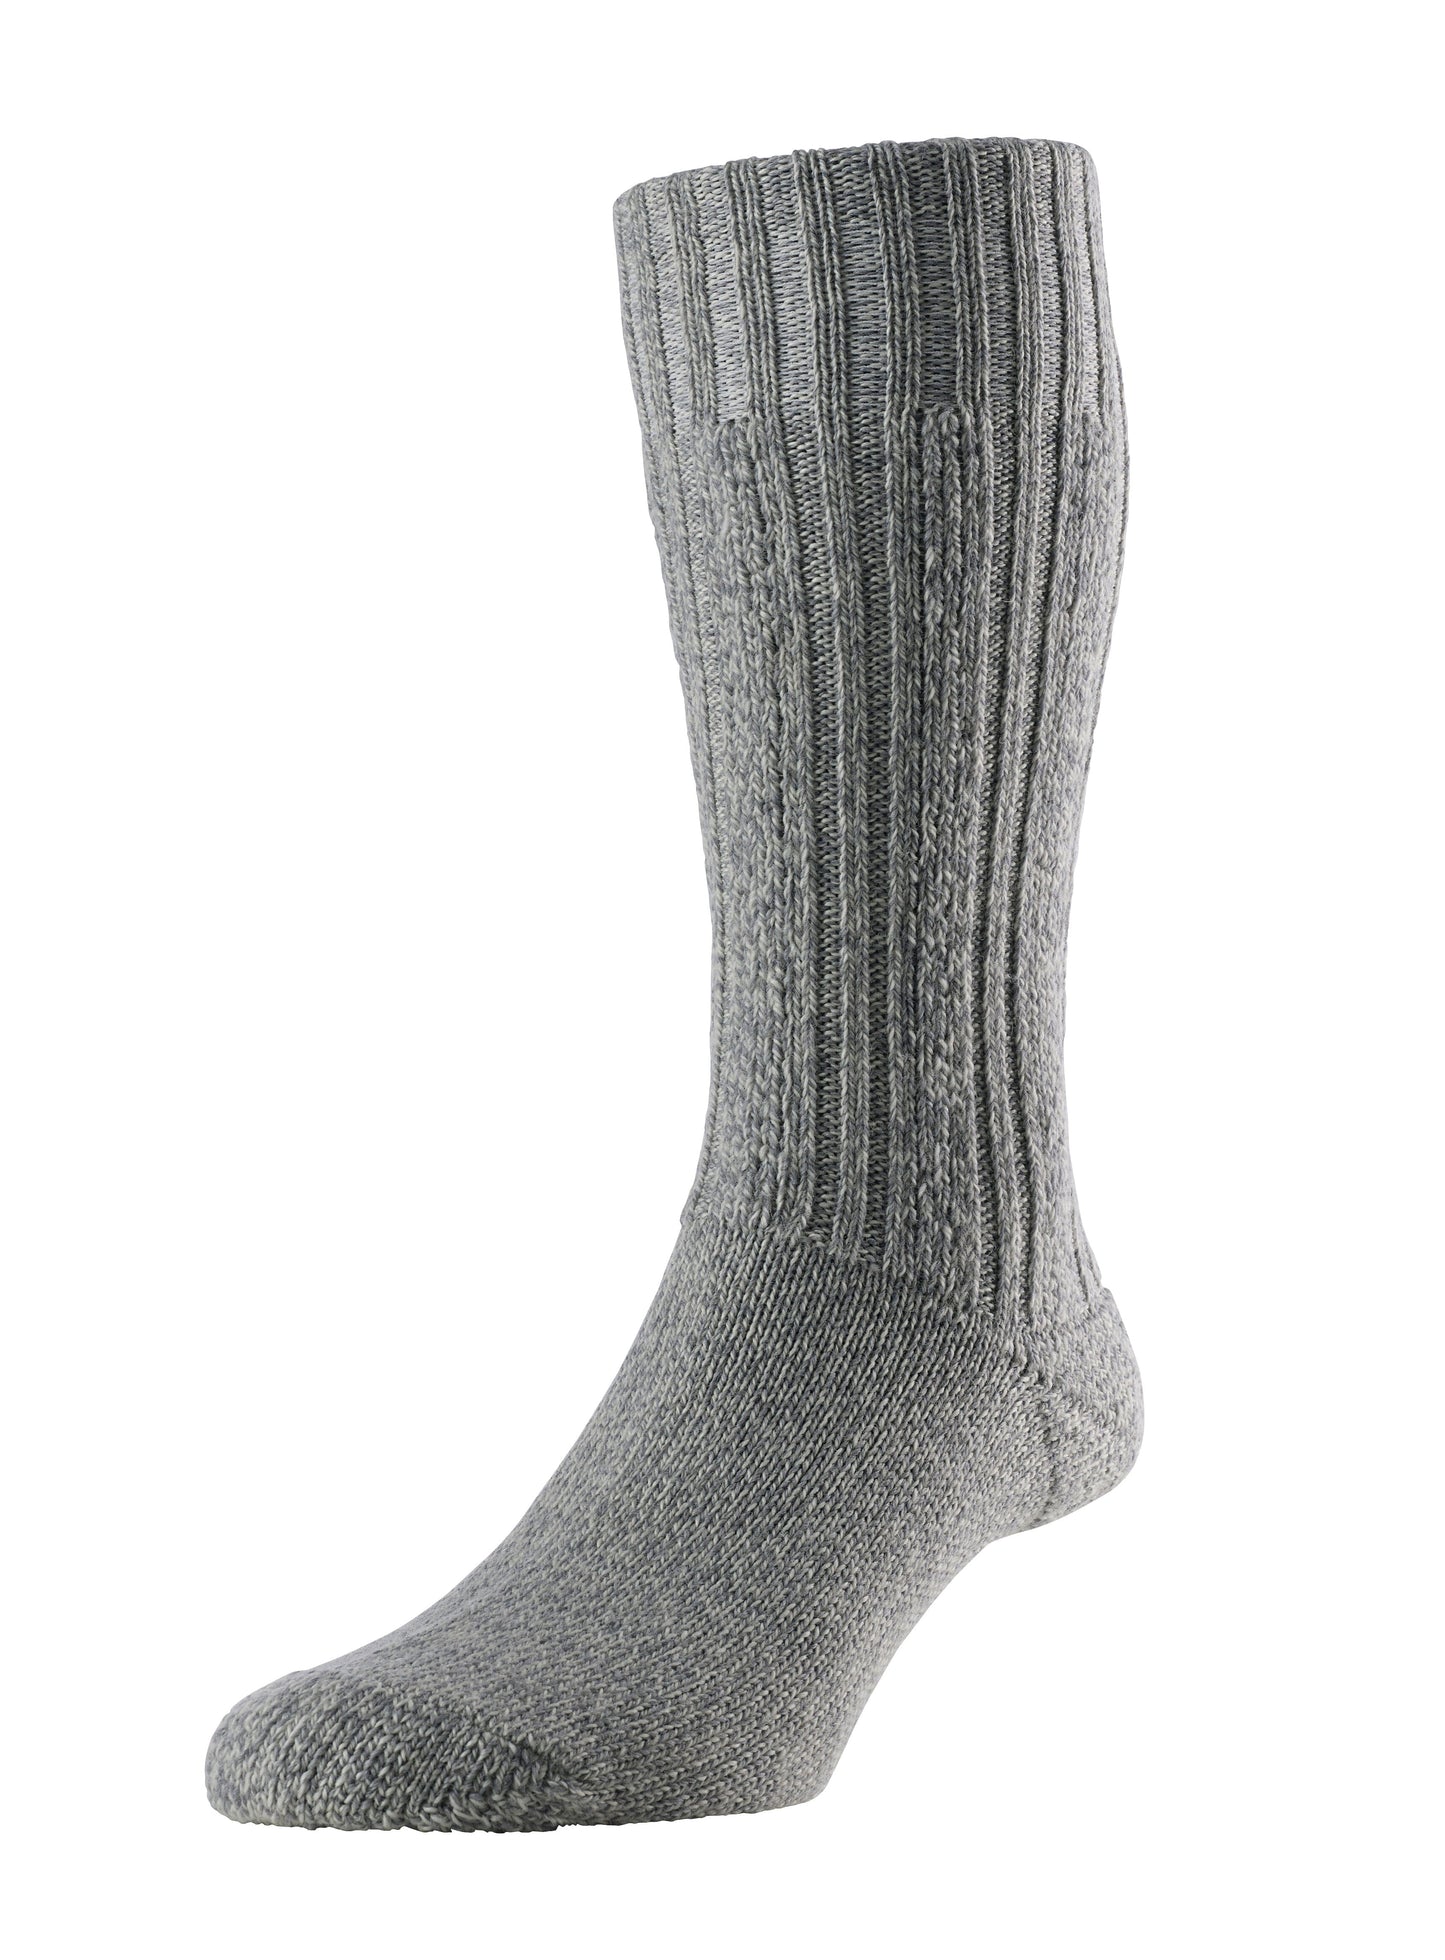 Merino Wool Boot Socks - Socks - Grey - THREADPEPPER